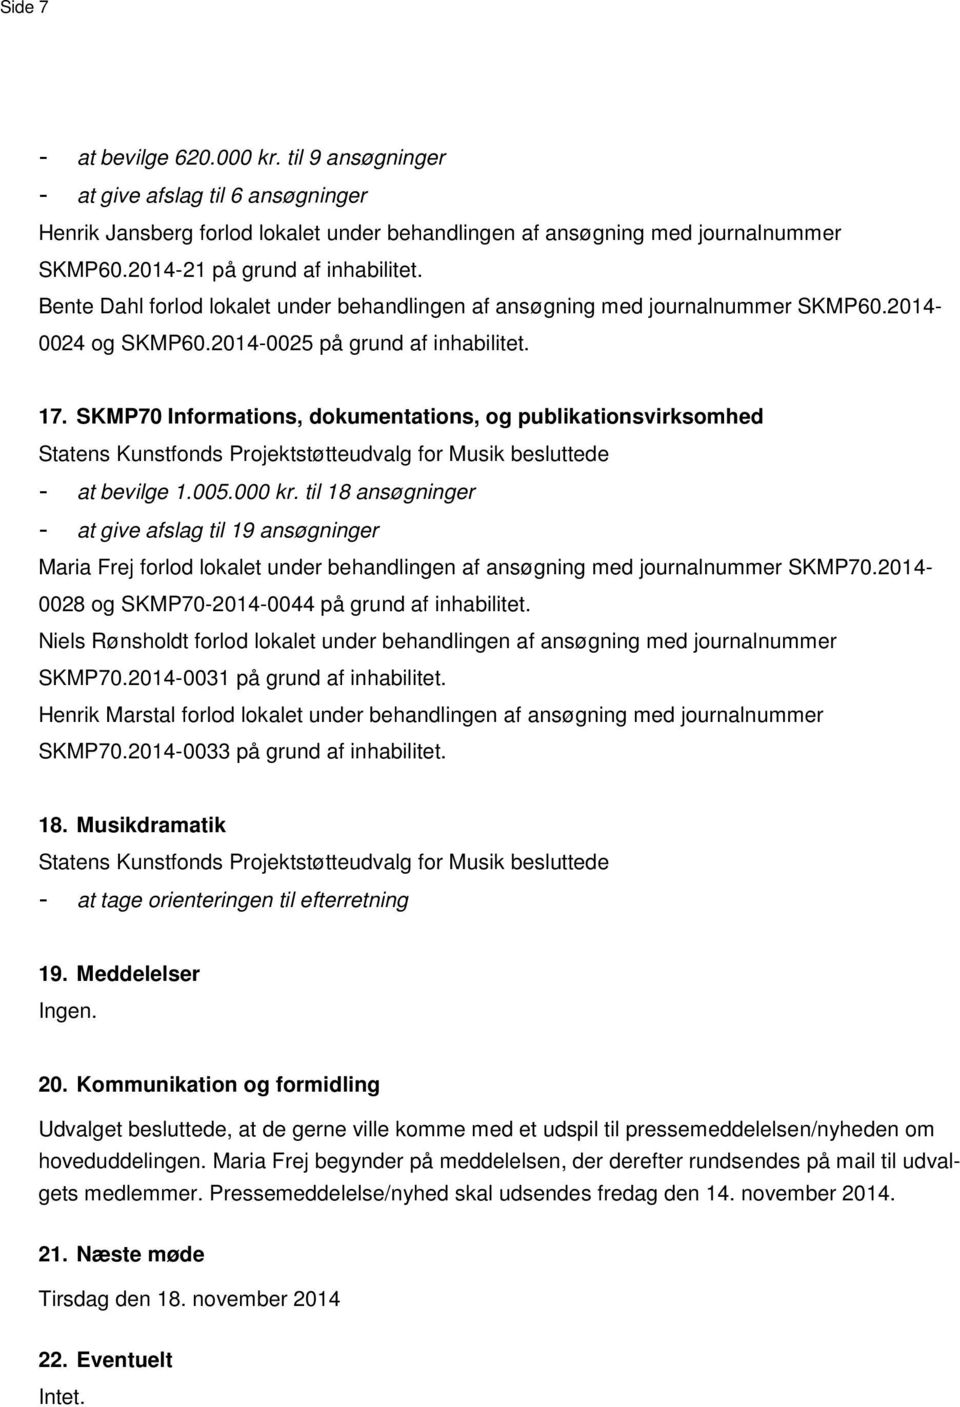 SKMP70 Informations, dokumentations, og publikationsvirksomhed - at bevilge 1.005.000 kr.